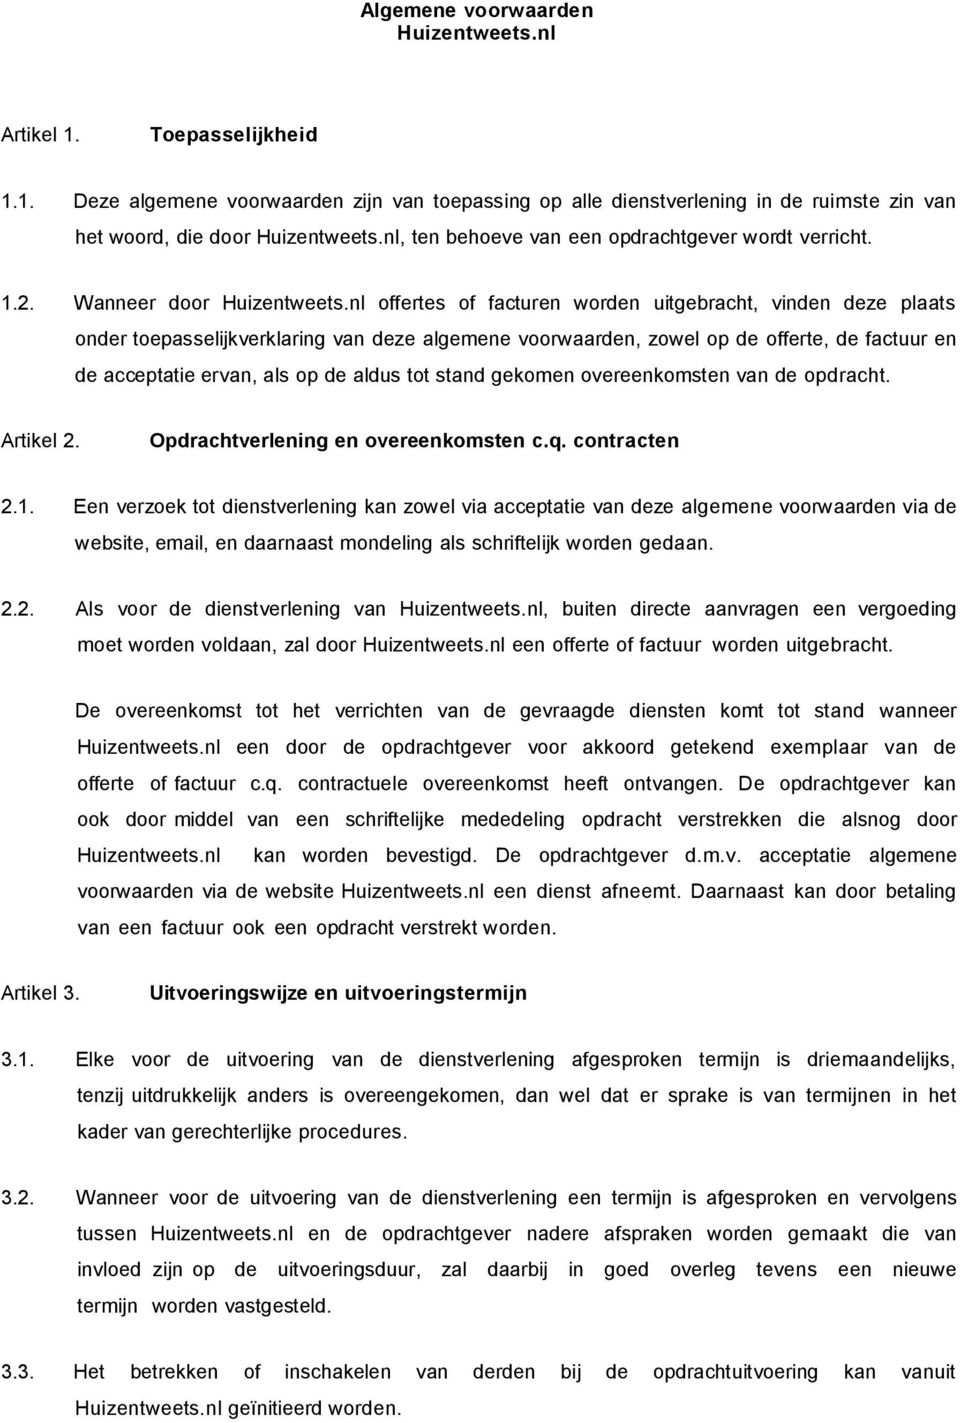 Algemene voorwaarden Huizentweets.nl - PDF Free Download